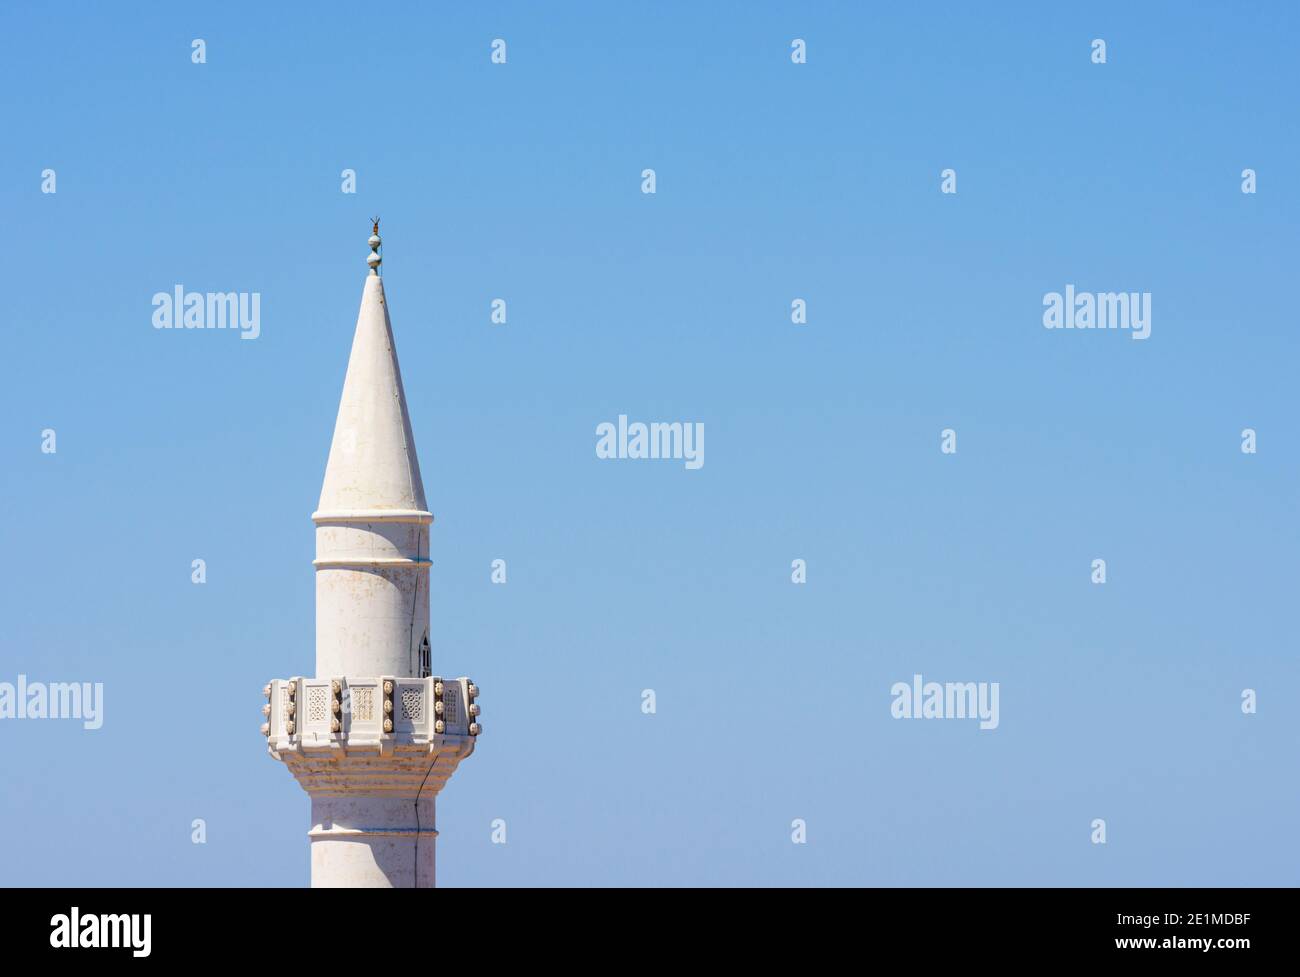 Dettaglio superiore del minareto della Moschea Ibrahim Pasha a Rodi, Grecia Foto Stock